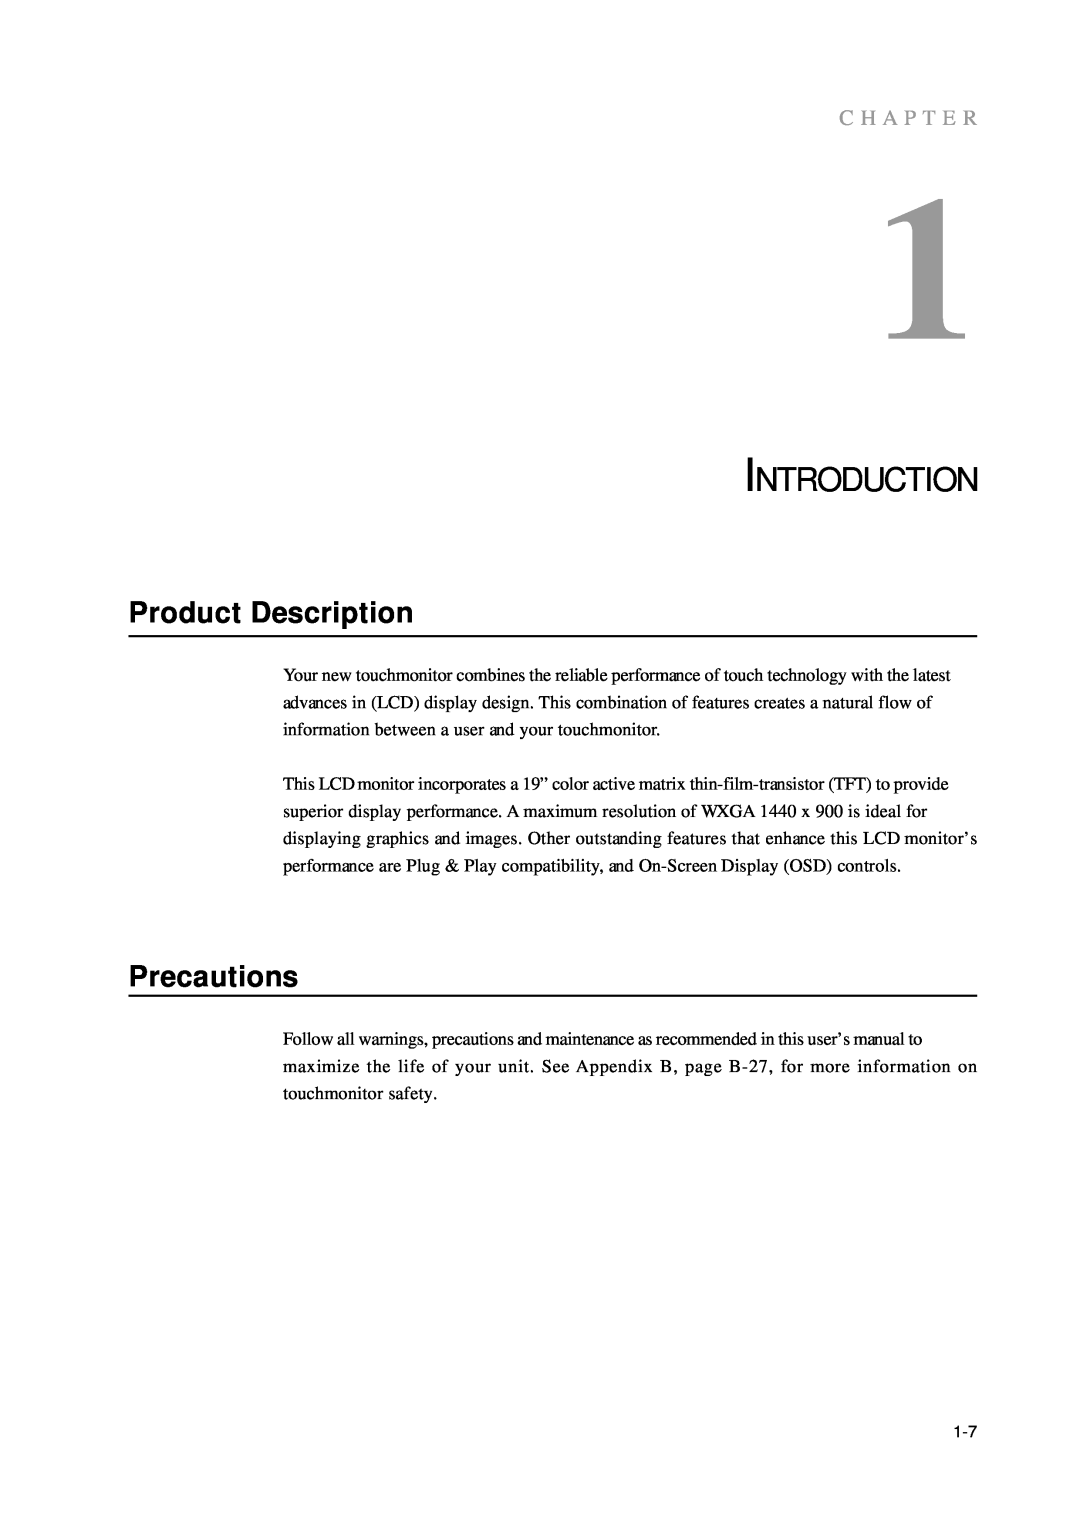 Tyco Electronics 1938L manual Introduction, Product Description, Precautions, C H A P T E R 